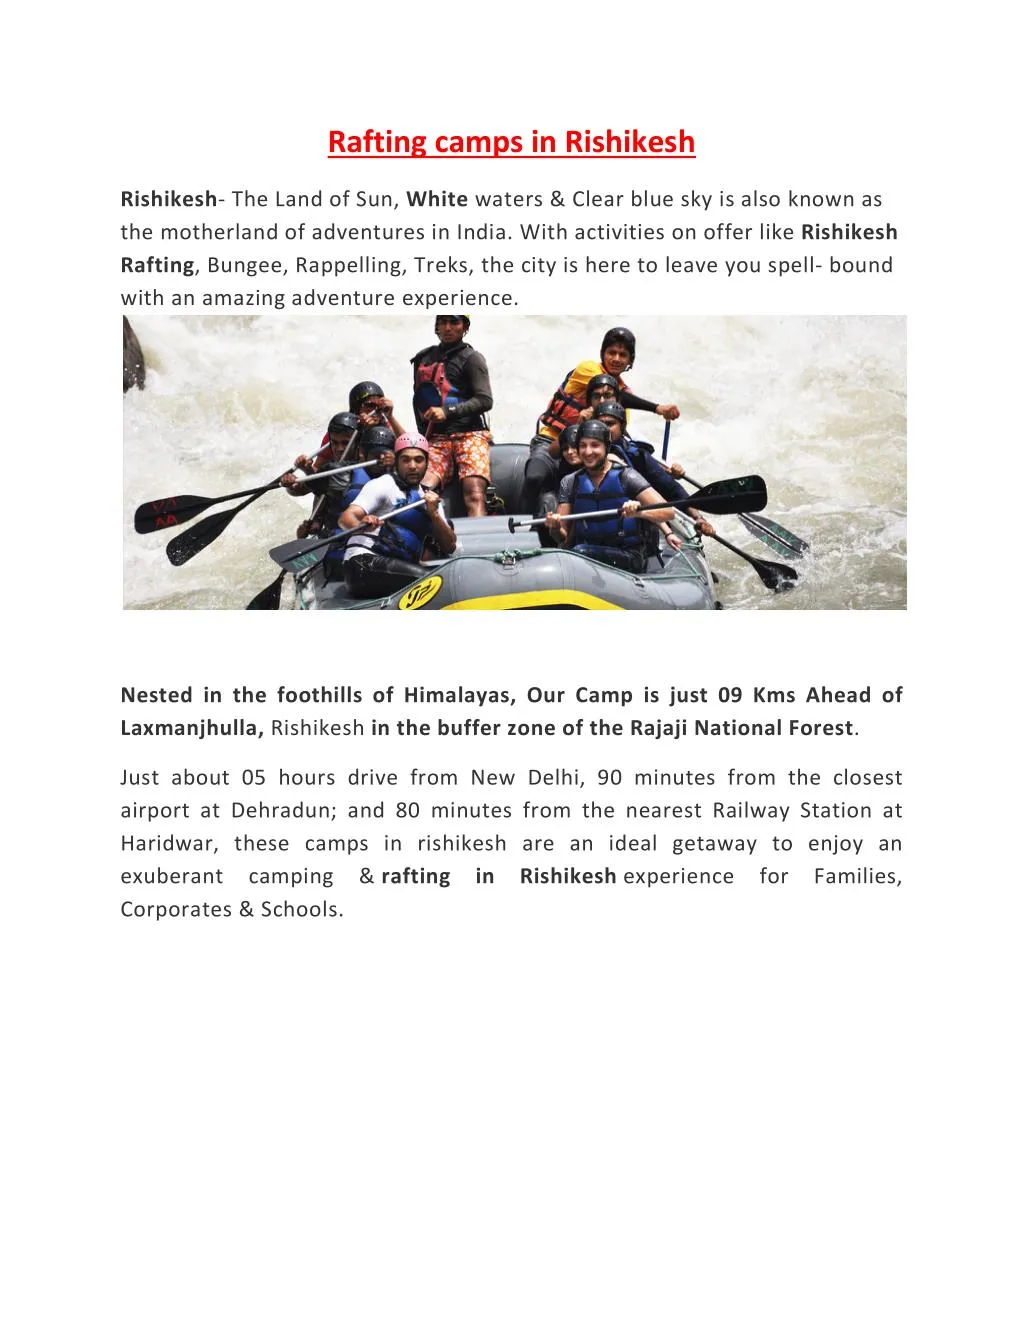 rafting camps in rishikesh